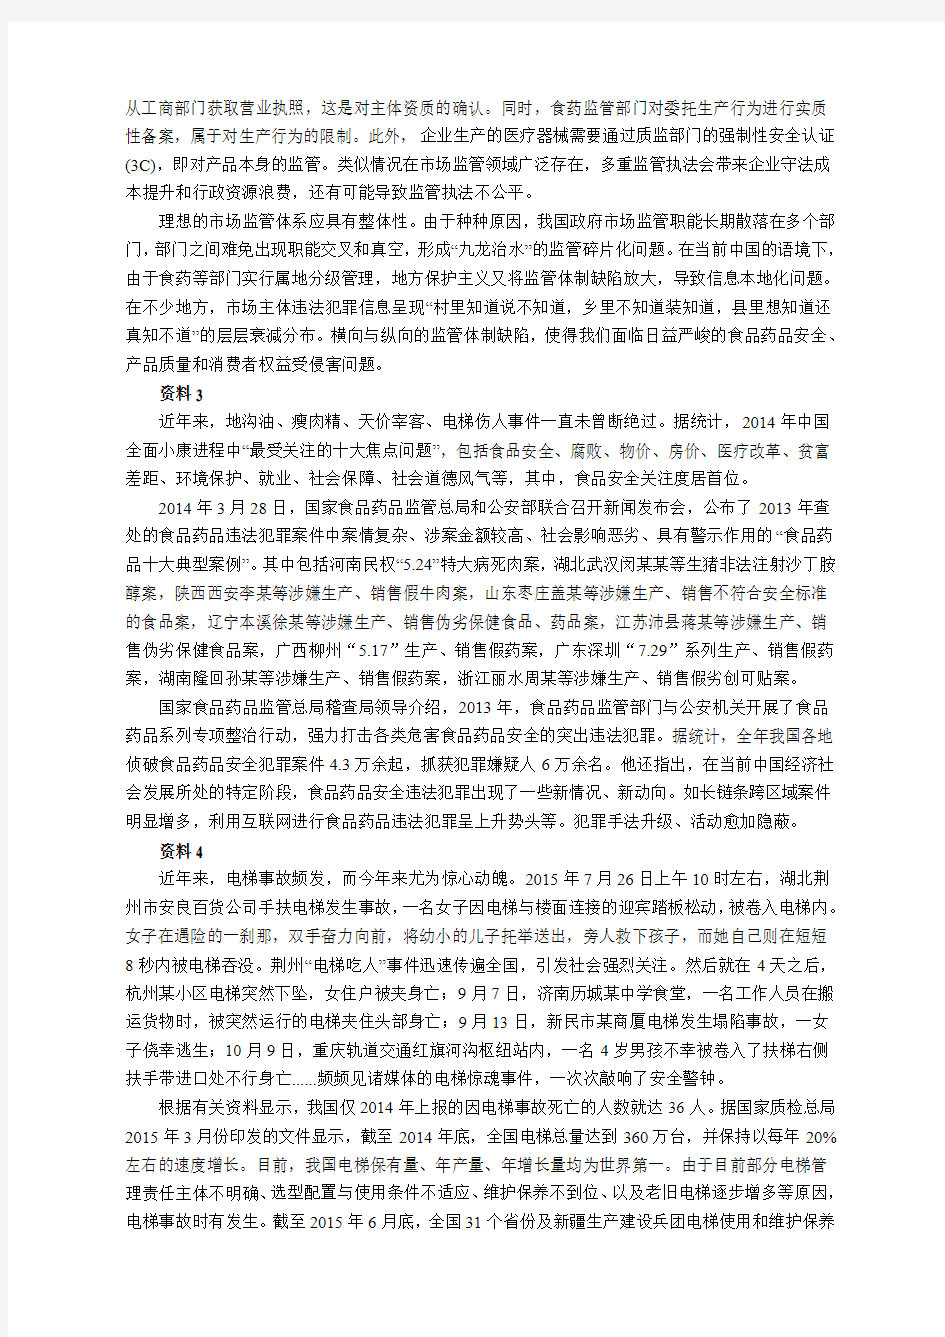 【公考真题】2016年上海公务员考试《申论》真题卷(A卷)